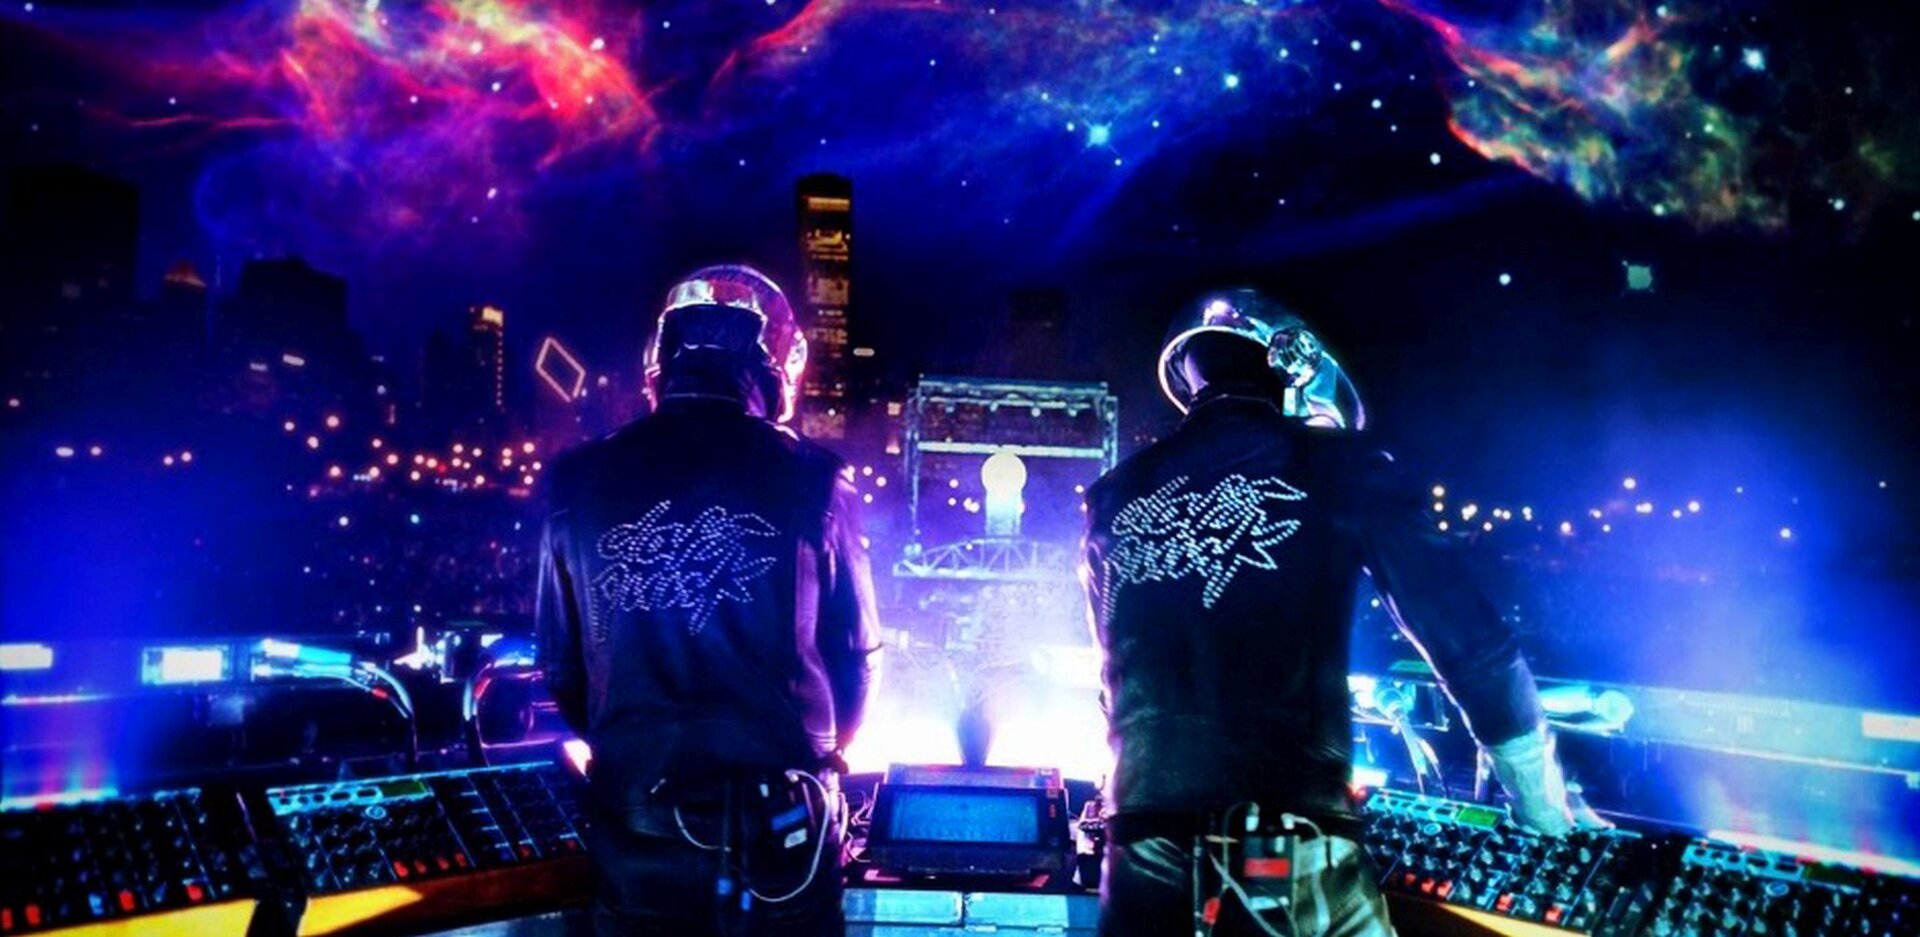 Na zdjęciu dwóch DJ-ów sfotografowanych podczas tworzenia muzyki, od tyłu. Przed mężczyznami konsole. Muzycy ubrani są w czarne stroje z jasnymi elementami, które świecą w świetle ultrafioletowym. W tle pokaz świetlny.